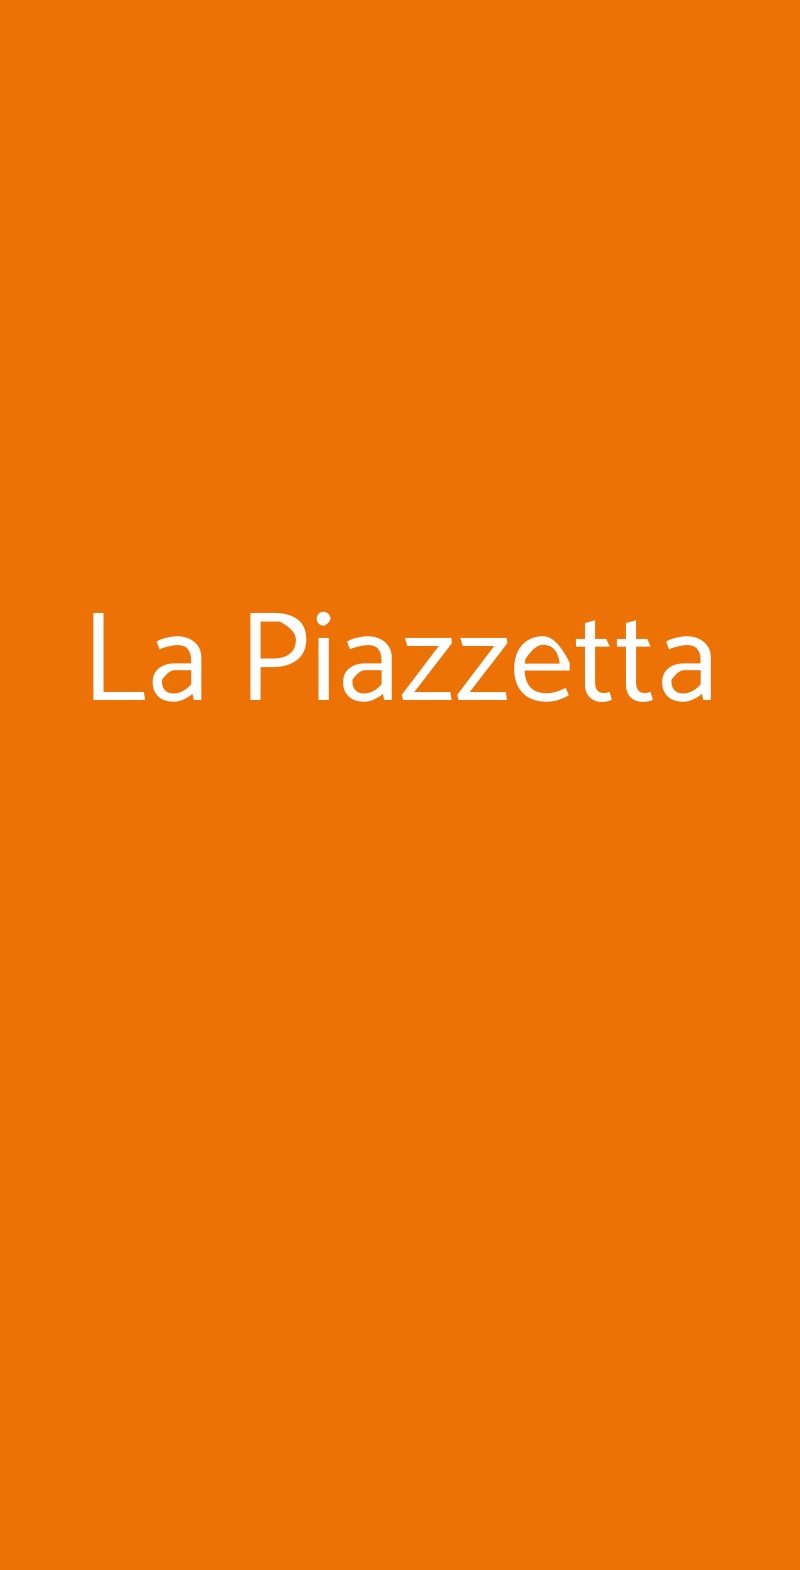 La Piazzetta Napoli menù 1 pagina